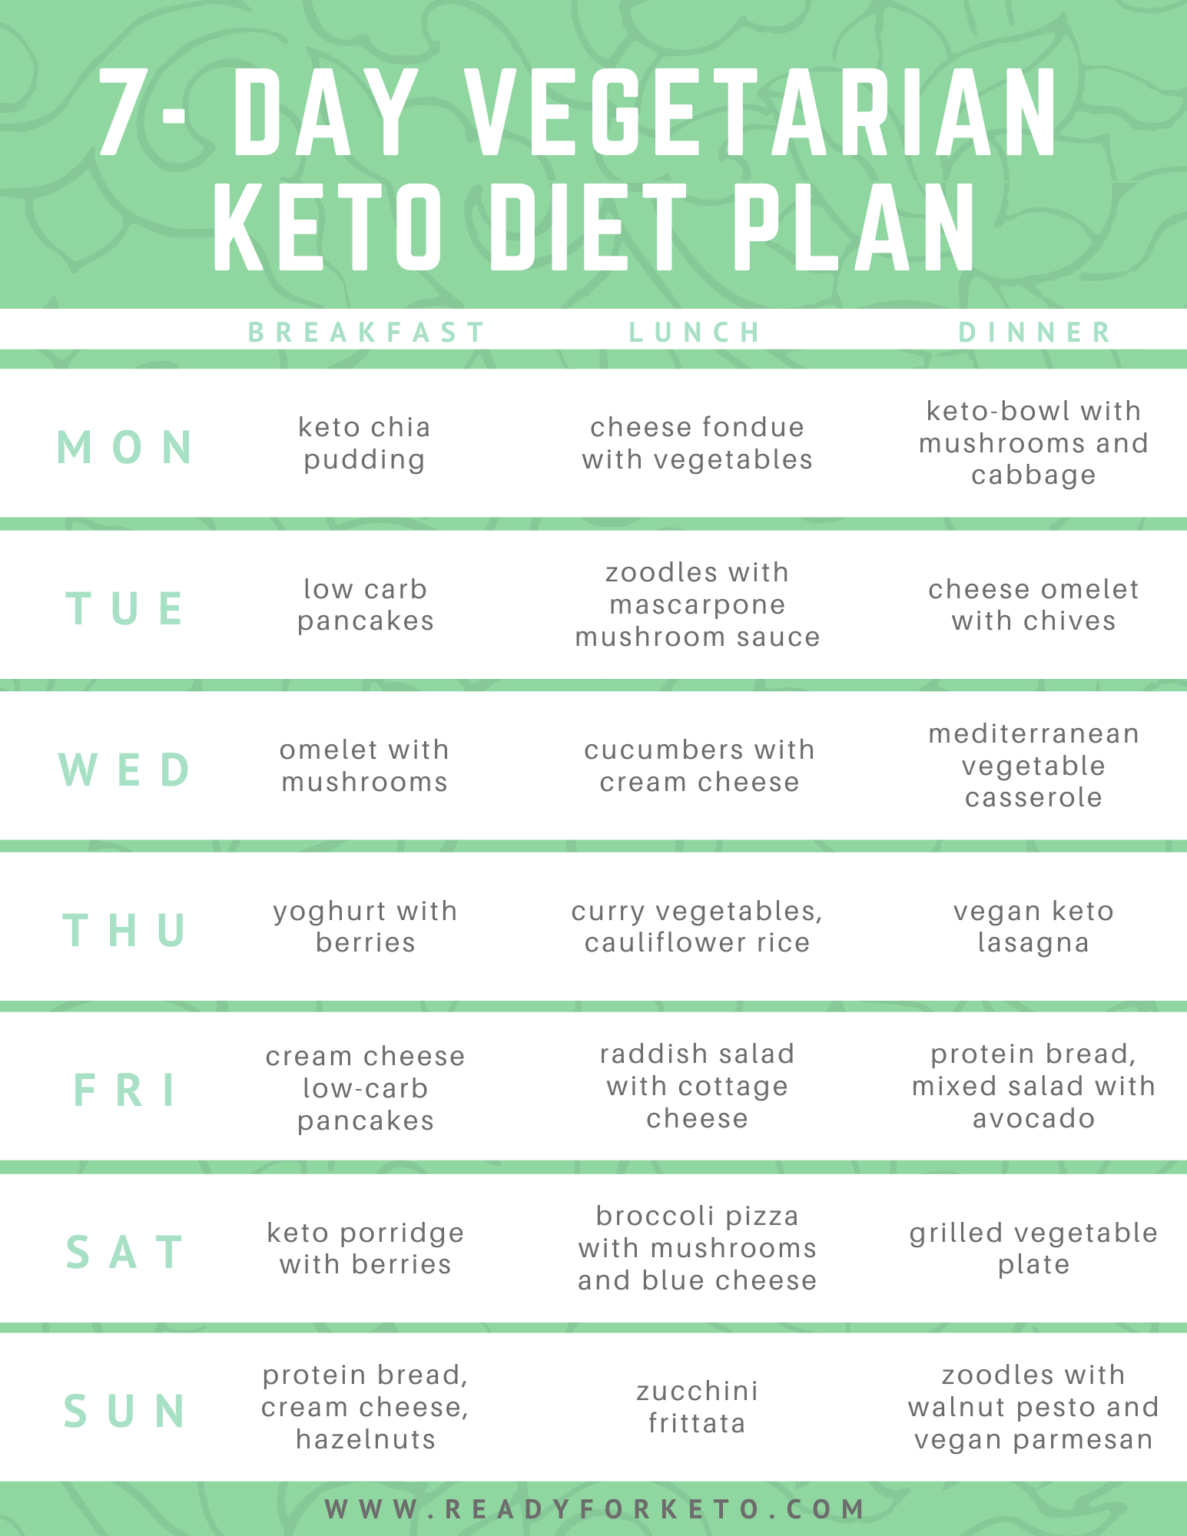 Keto Diet for Vegetarians: Beginners Guide Ready for Keto